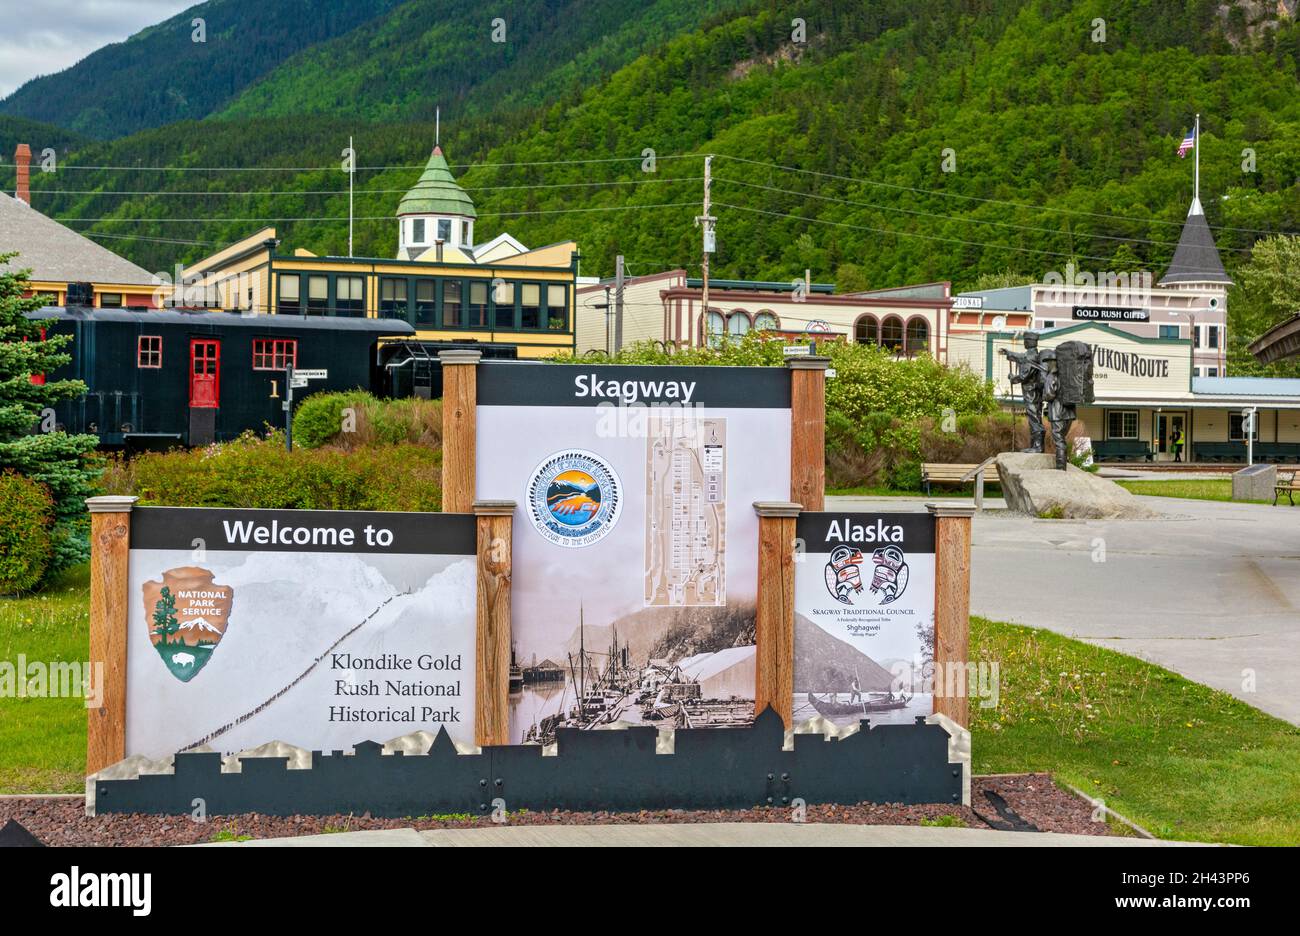 Alaska, Skagway, parc historique national de la ruée vers l'or du Klondike, panneau de bienvenue Banque D'Images